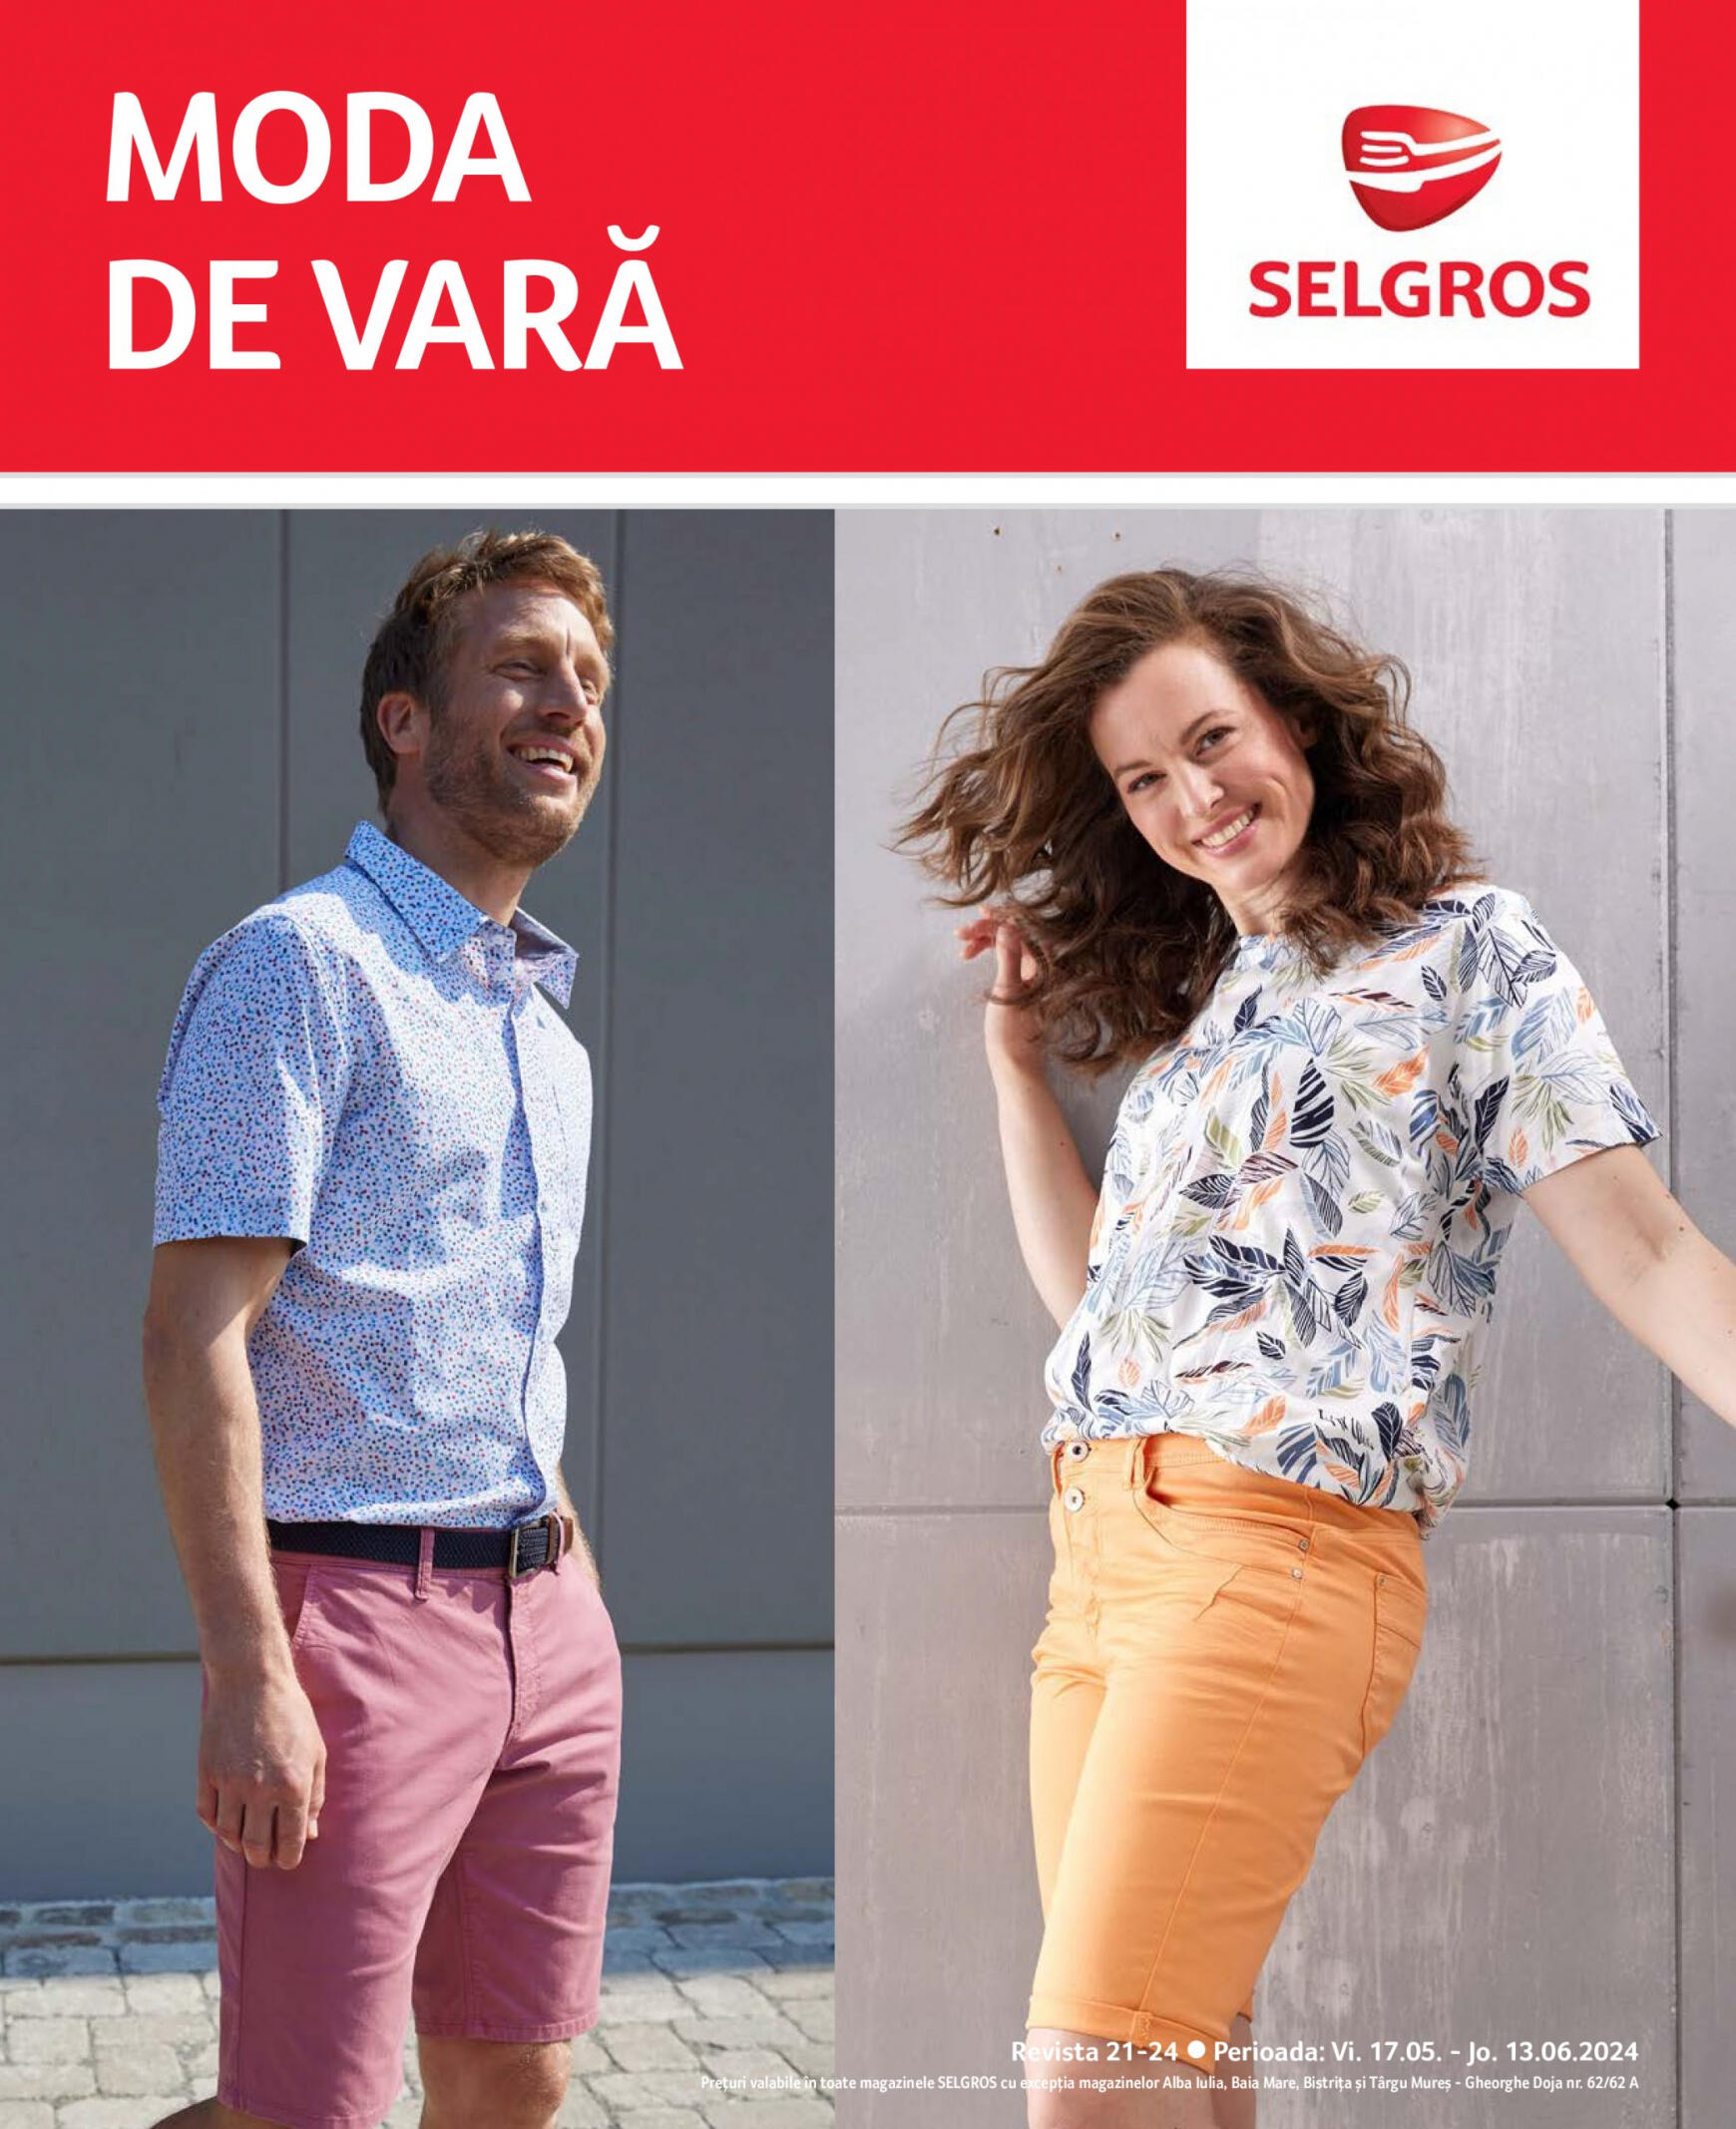 selgros - Catalog nou Selgros - Moda de Vară 17.05. - 13.06.